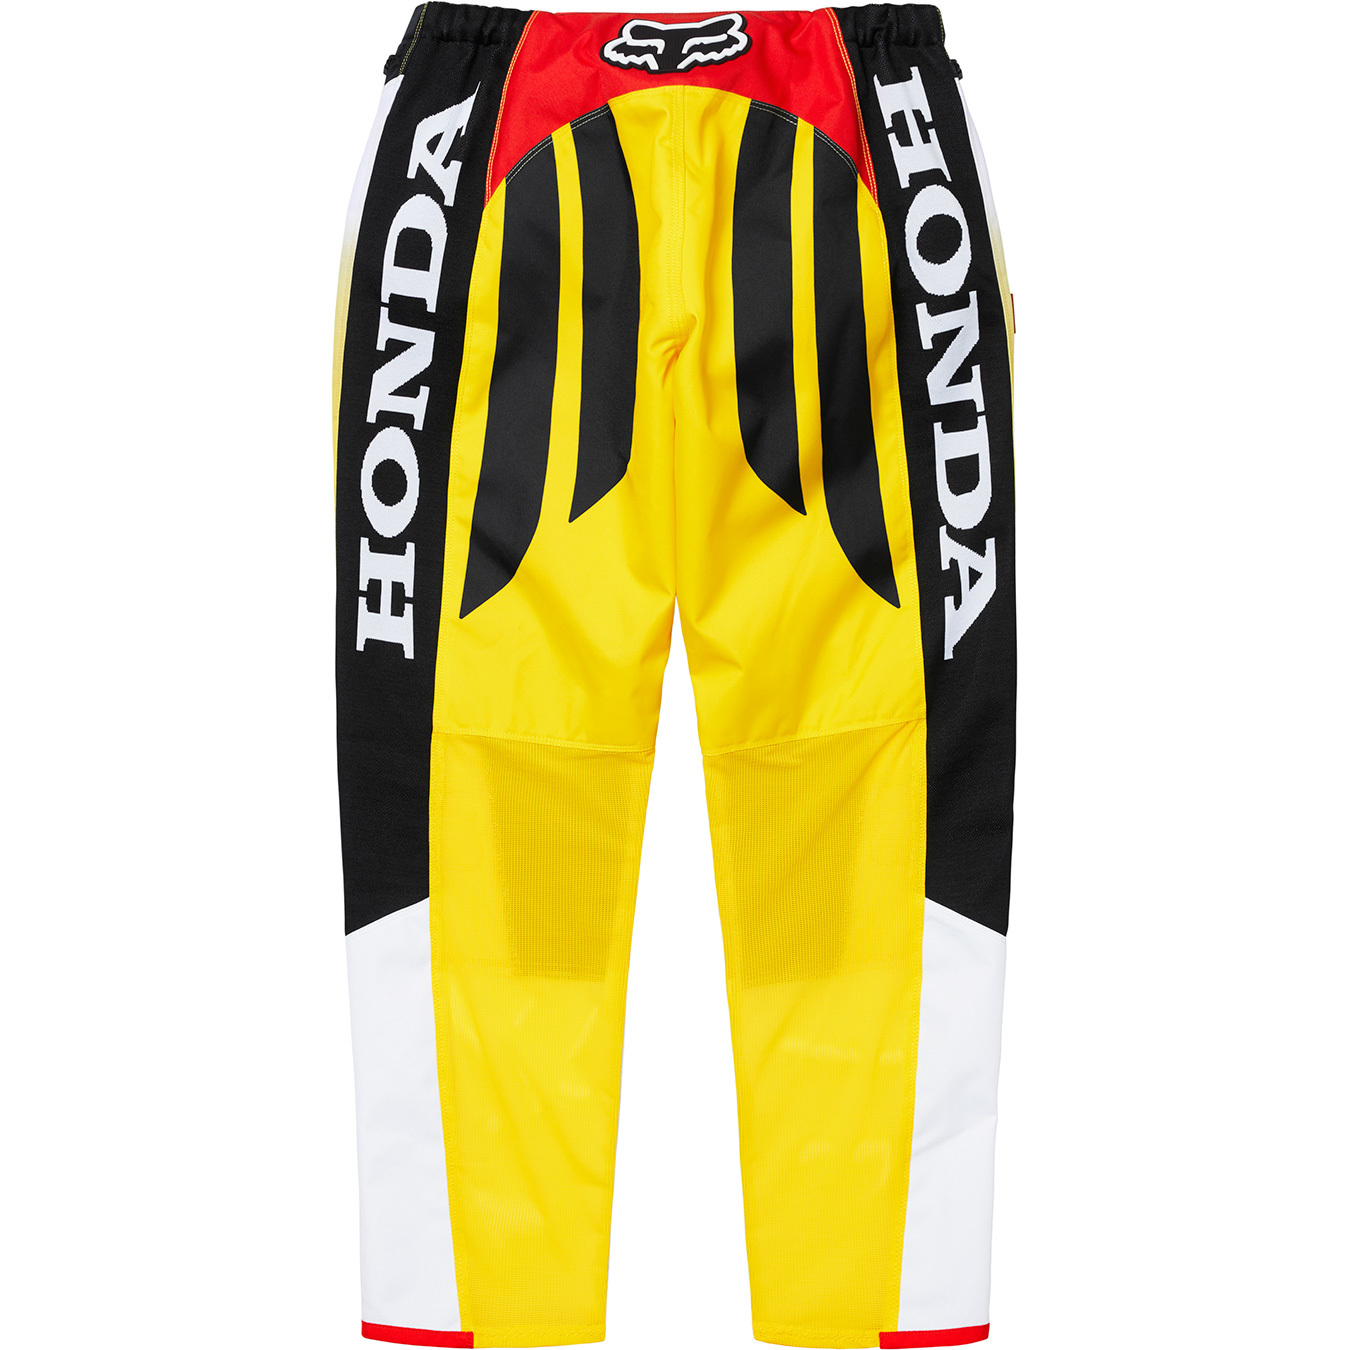 Supreme®/Honda®/Fox® Racing Moto Pant